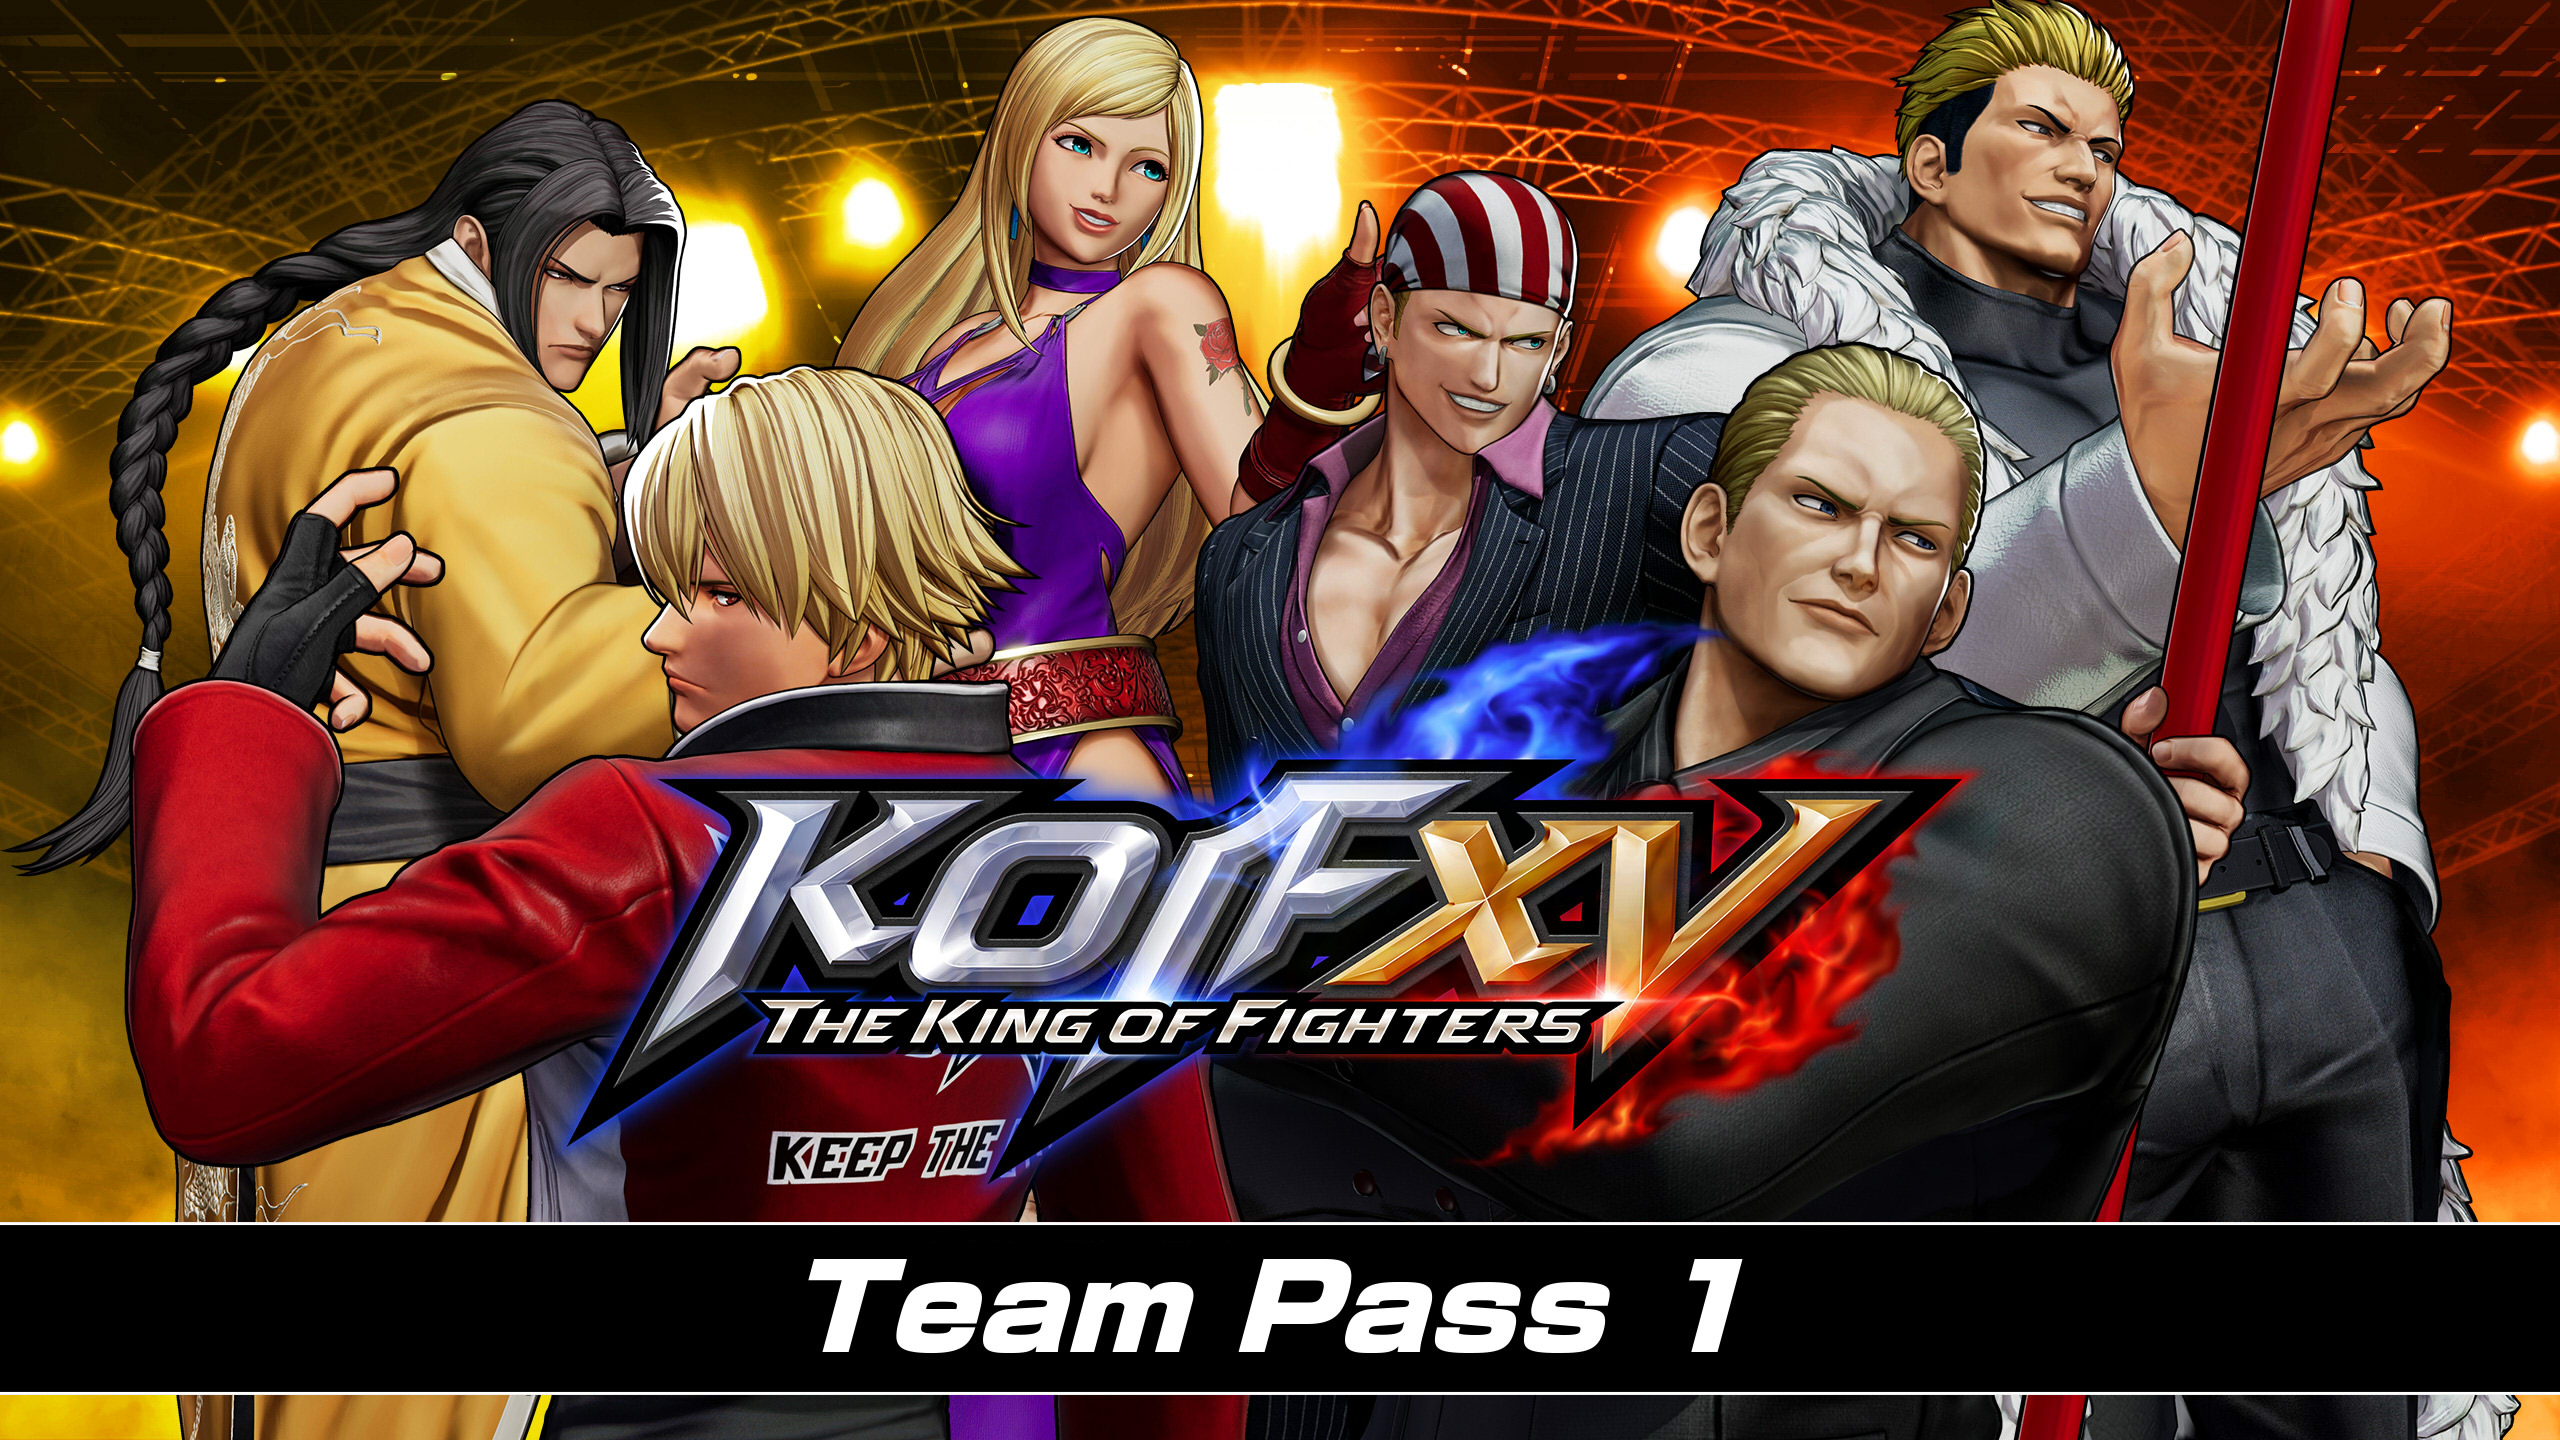 THE KING OF FIGHTERS XV - Team Pass 1 DLC EU PS4 CD Key $25.98